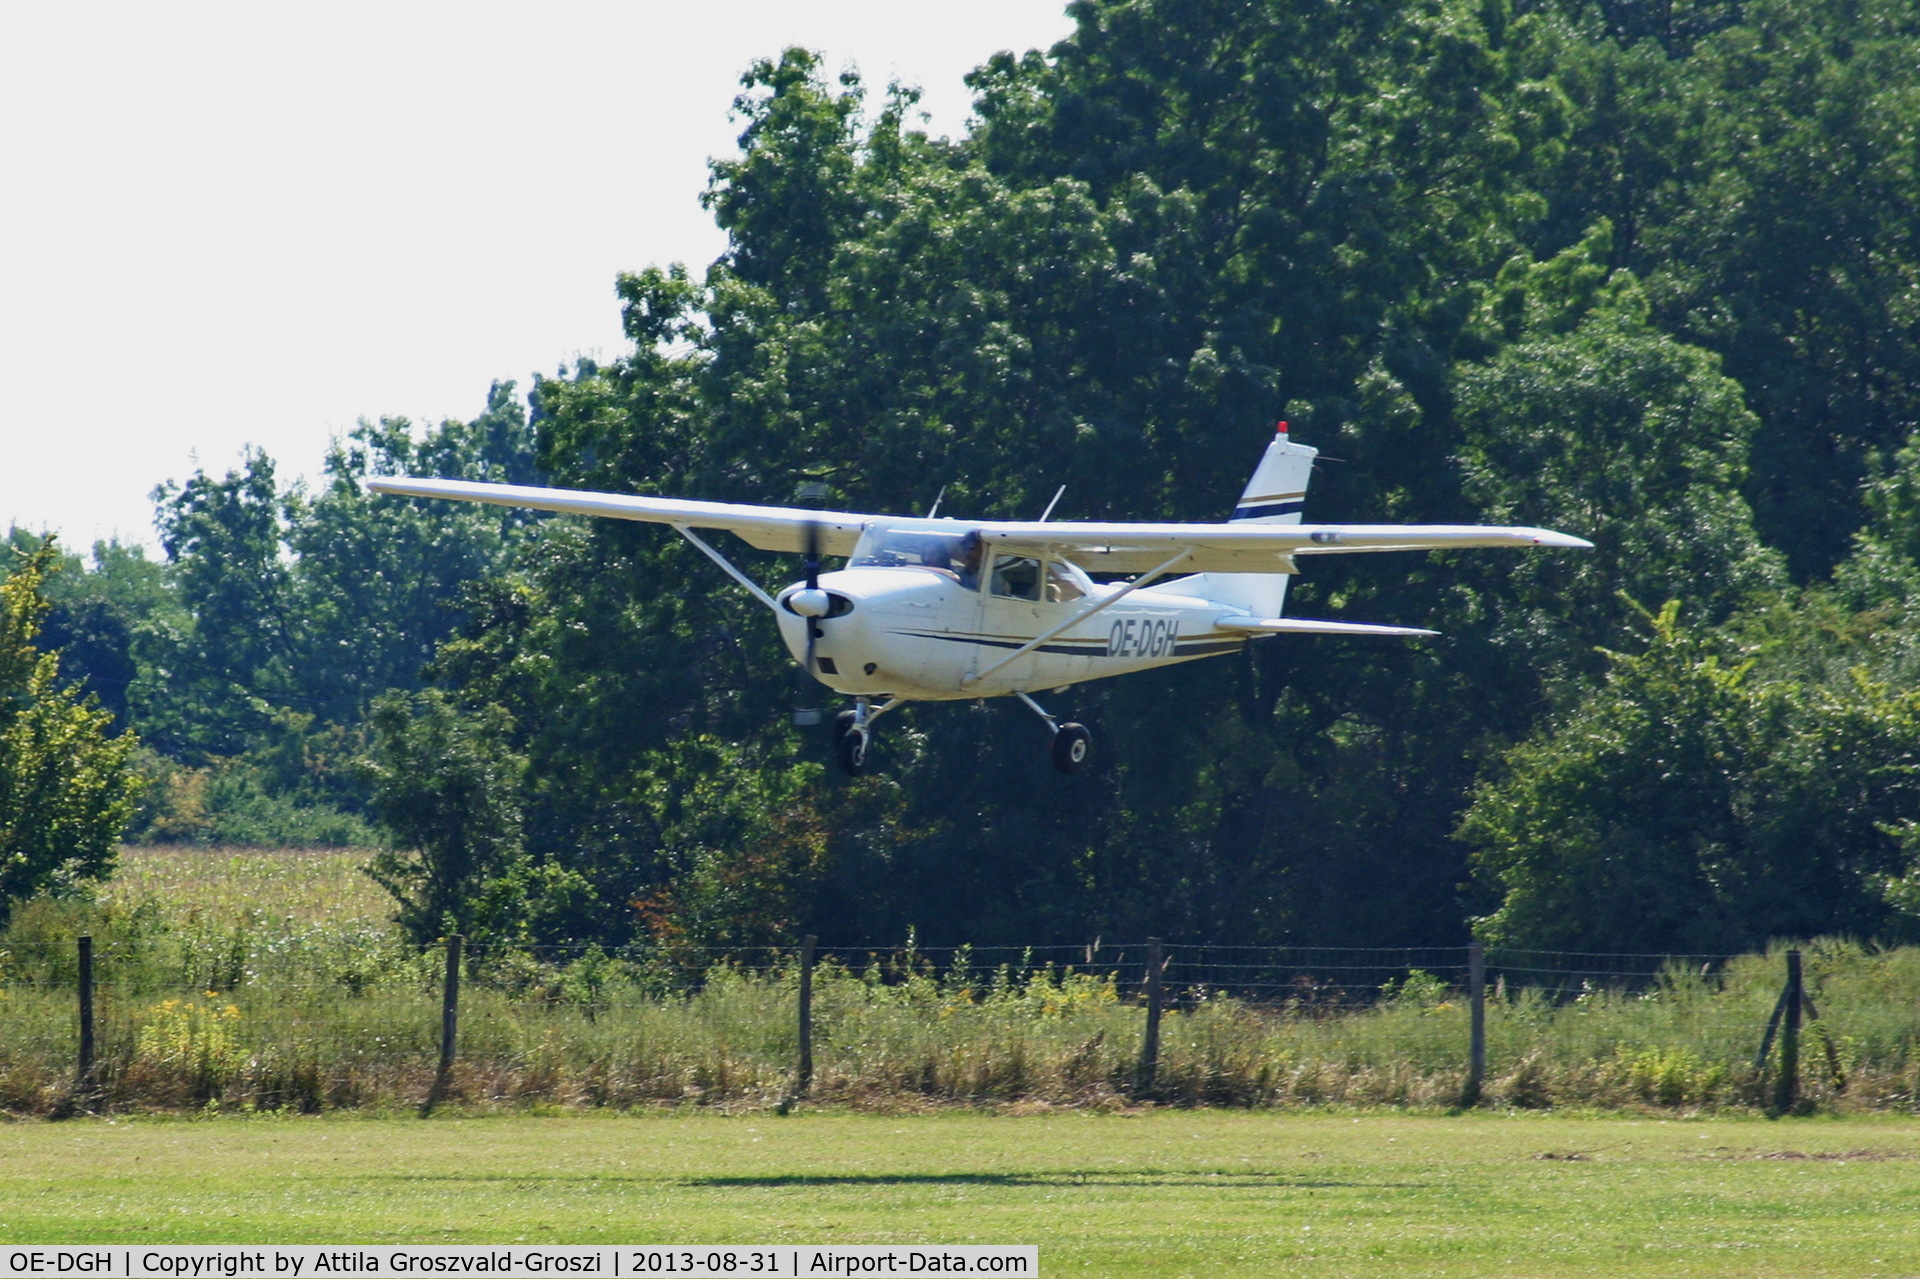 OE-DGH, Reims F172D Skyhawk C/N F172-0001, II. Cirrus-Hertelendy Aviator's Weekend , Hertelendy Castle Airfield Hungary